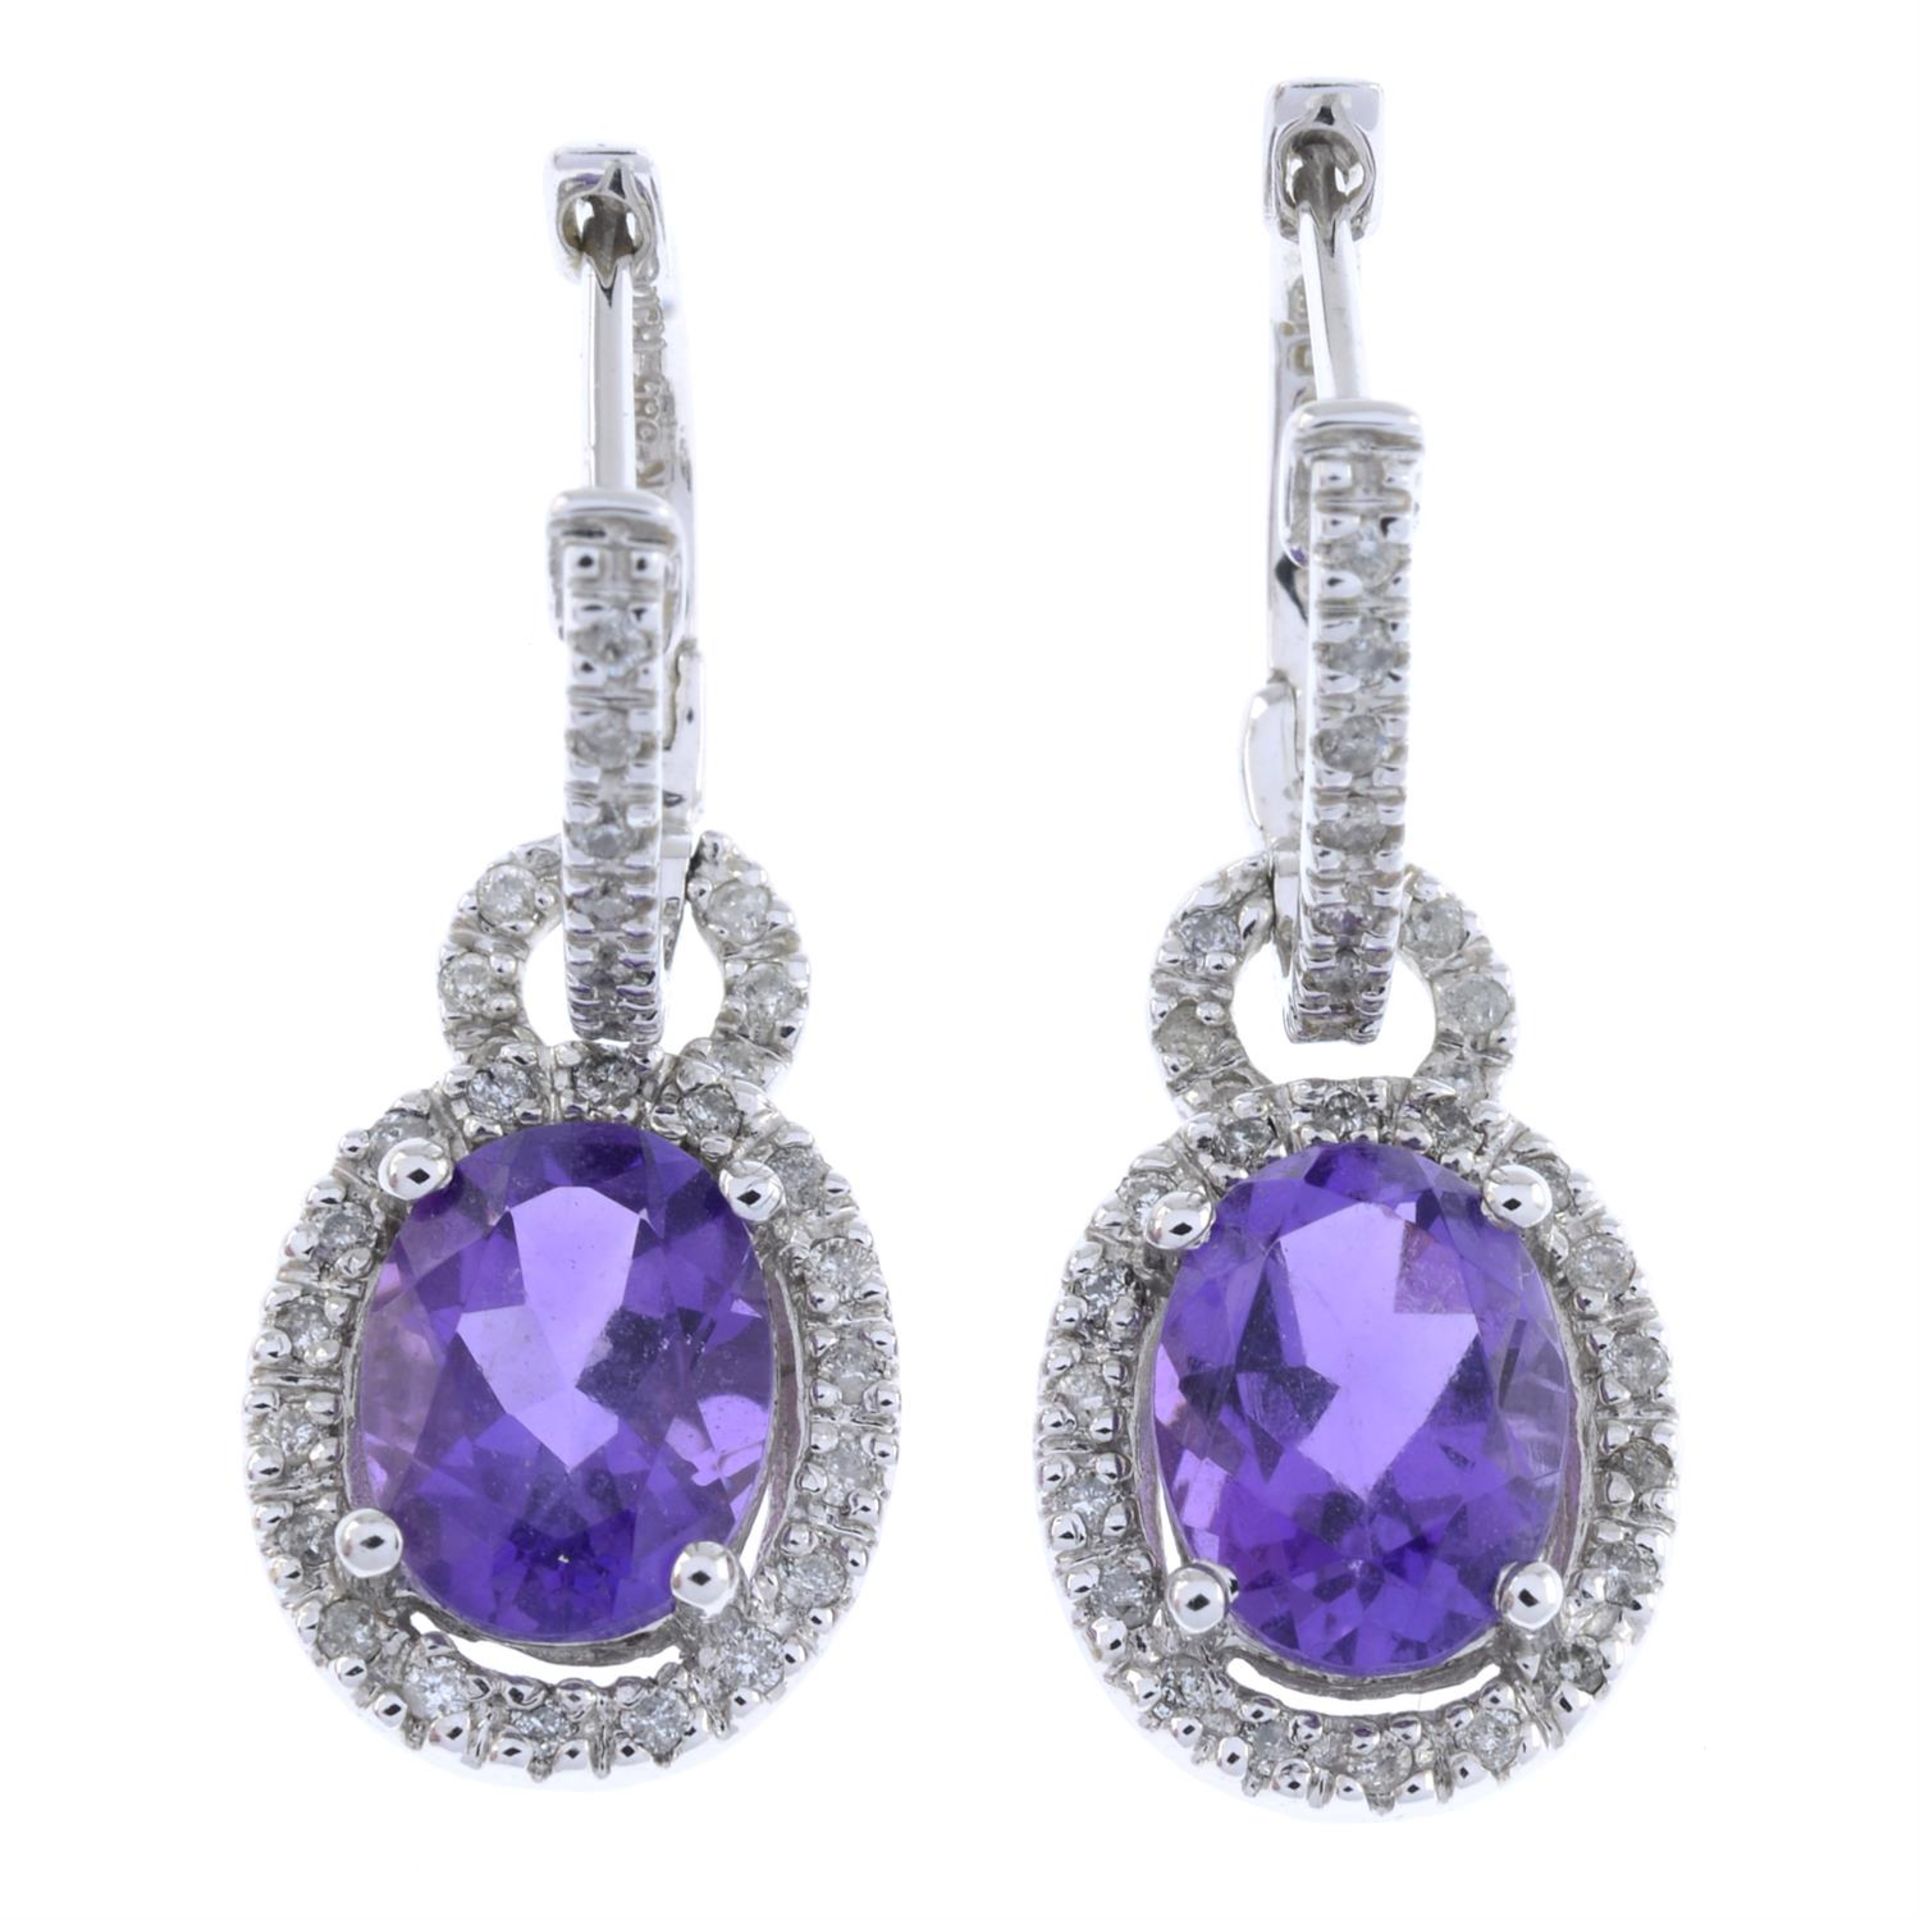 Amethyst & diamond earrings, AF